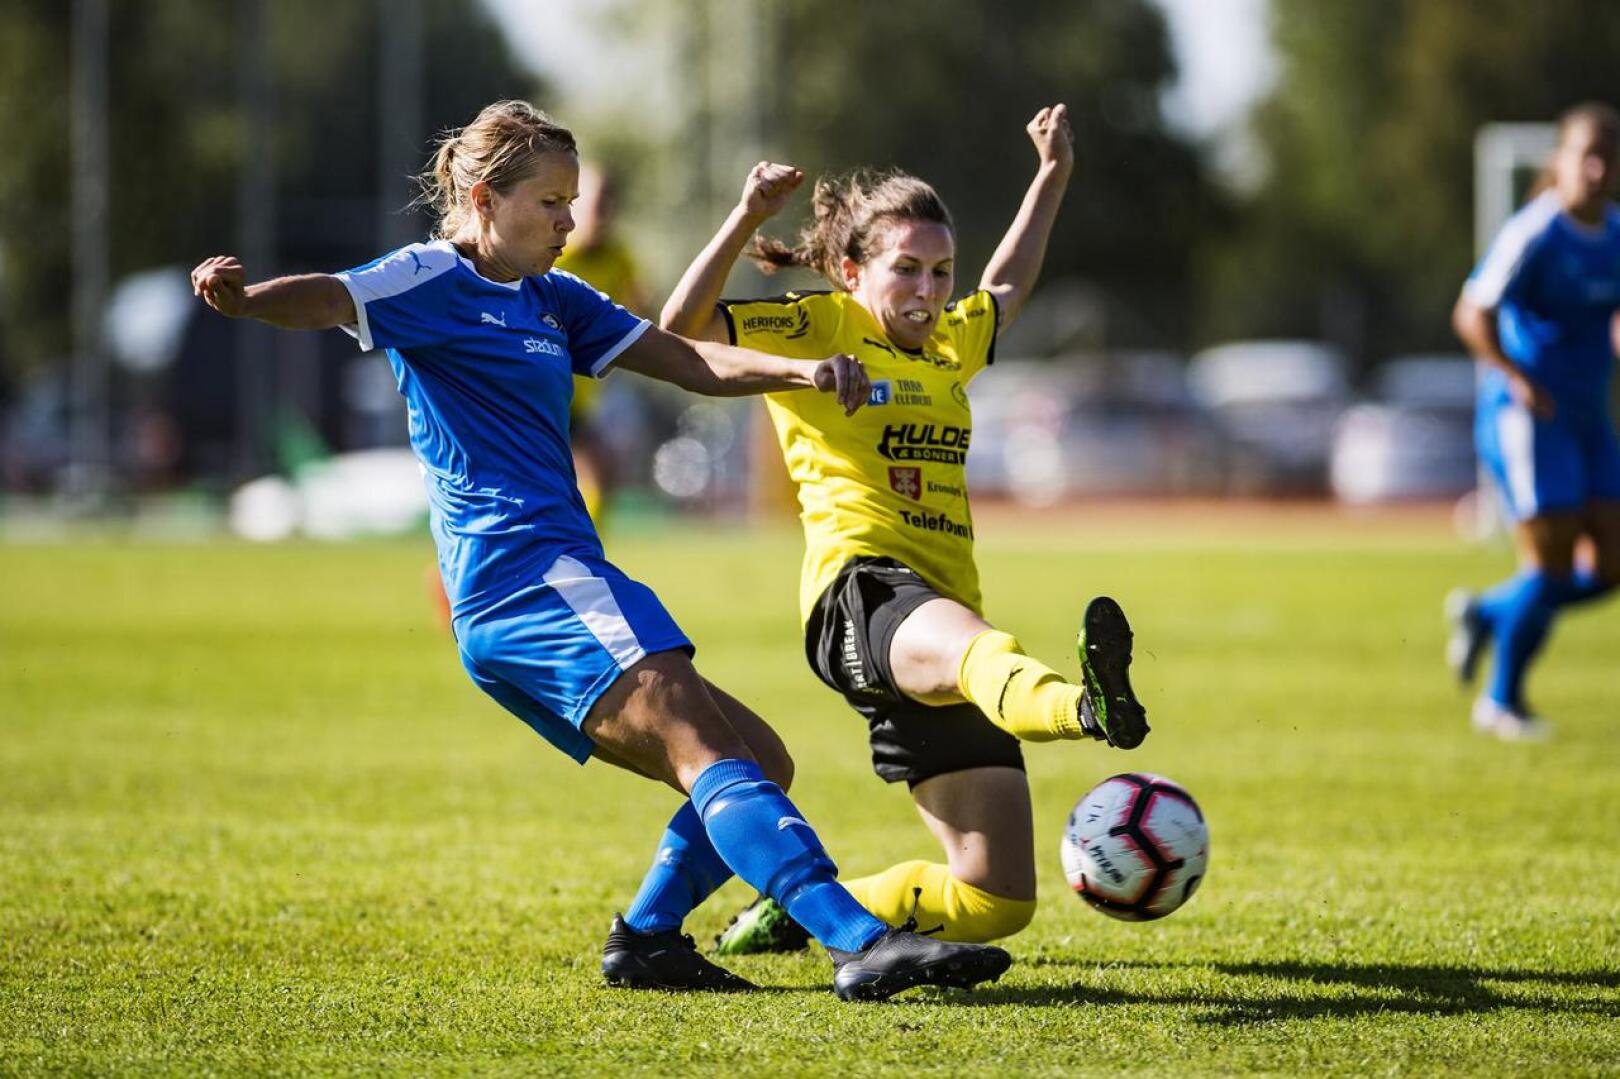 TPS on ollut paha vastus IK Myranille tällä kaudella. TPS voitti molemmat kotipelinsä, Alavetelissä joukkueet päätyivät pistejakoon.